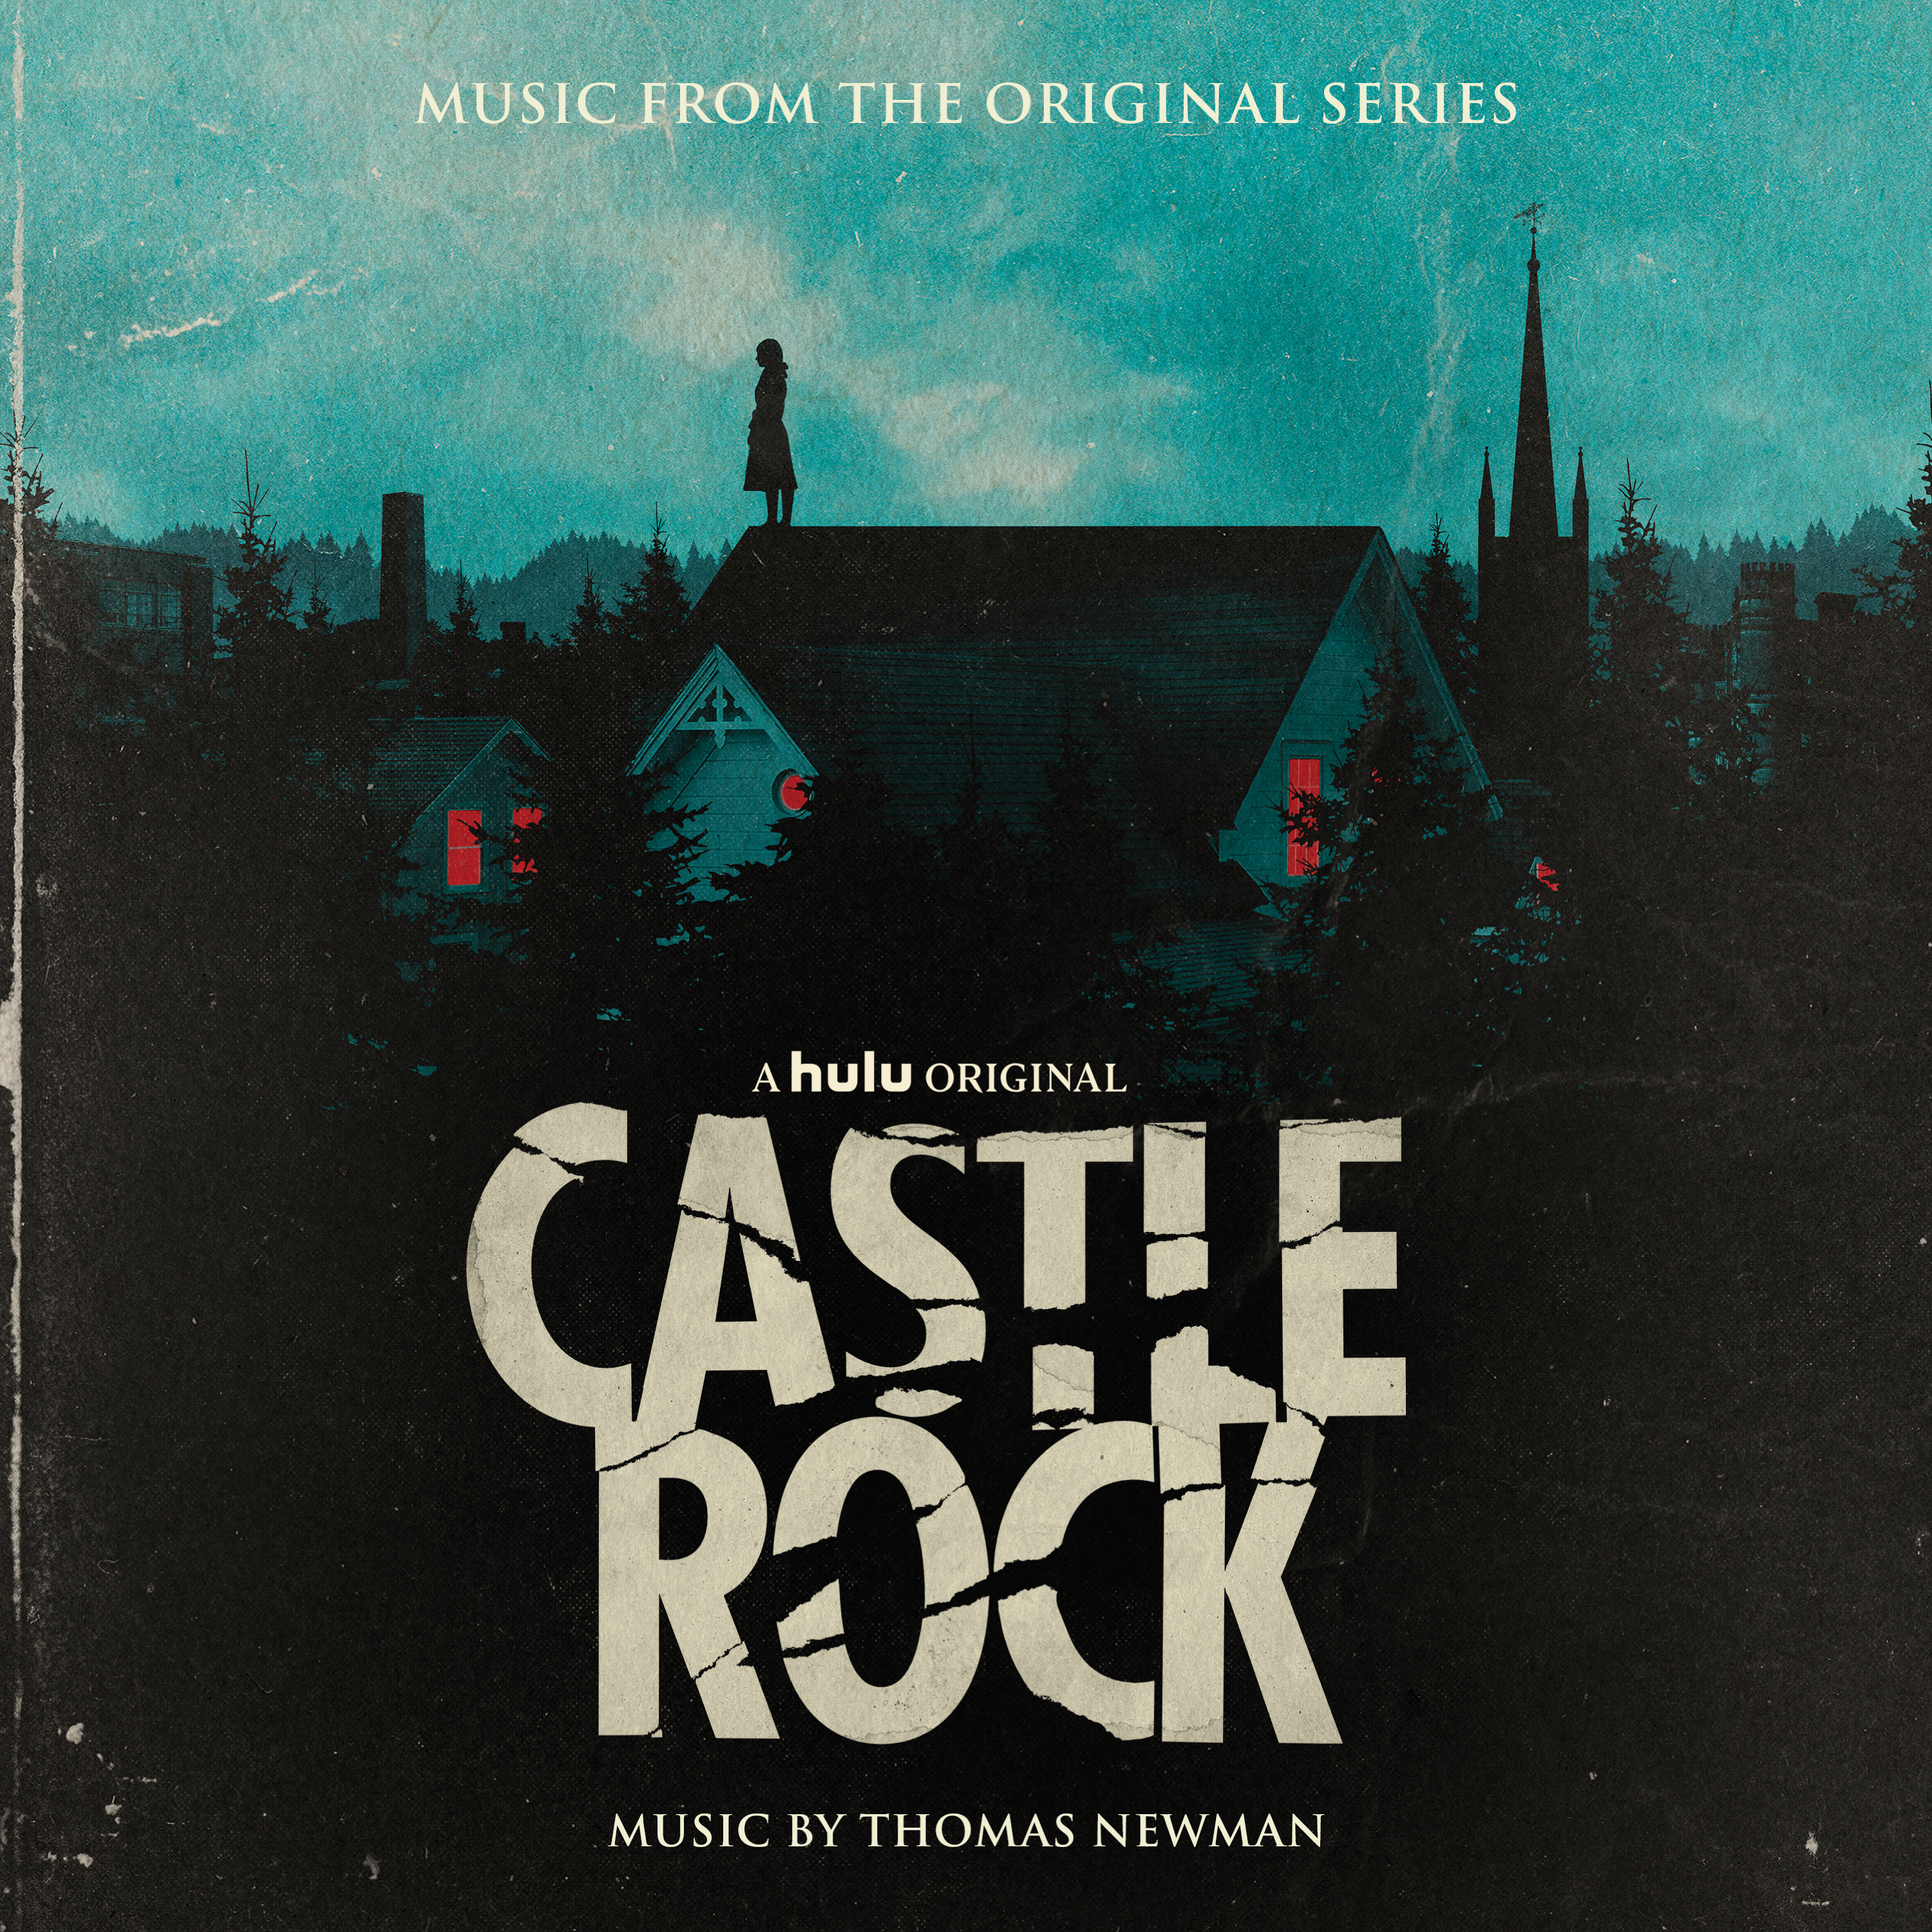 Castle Rock (Main Title) [From Castle Rock]